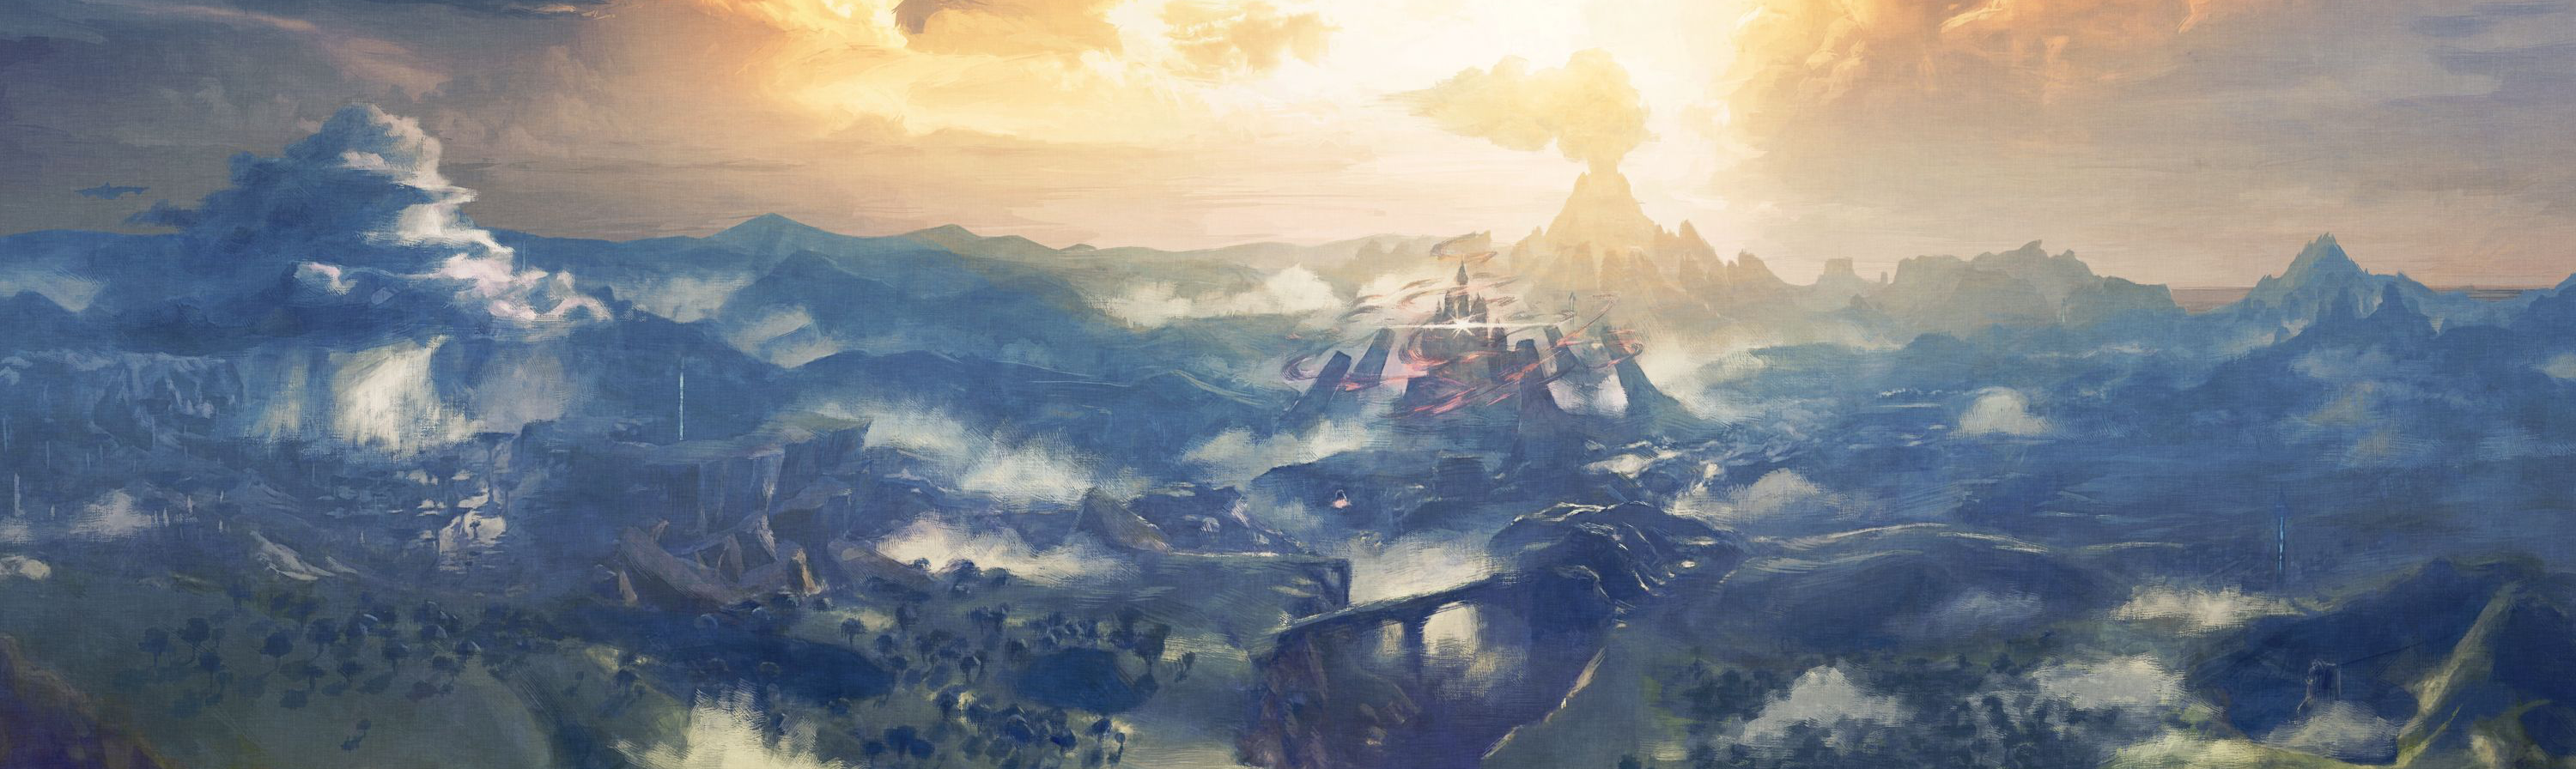 Eine Panorama-Ansicht von Hyrule mit der Burg im Zentrum: Ein Breath of the Wild-Artwork.